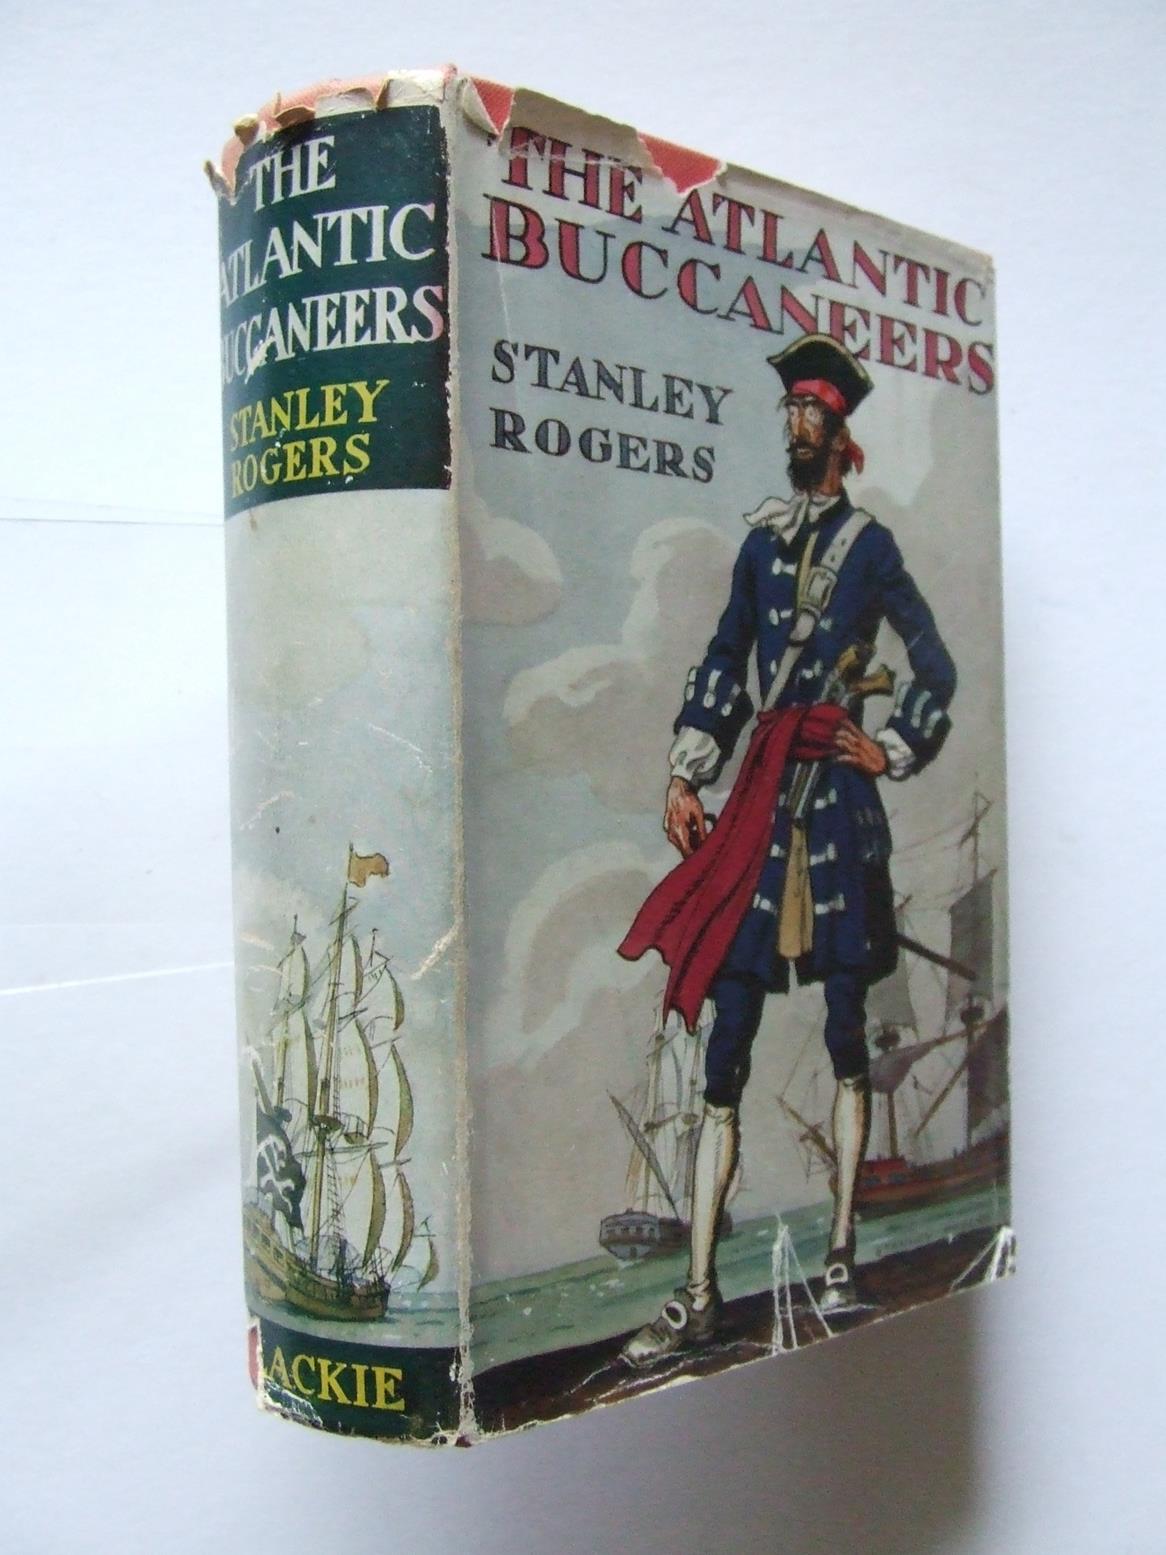 The Atlantic Buccaneers